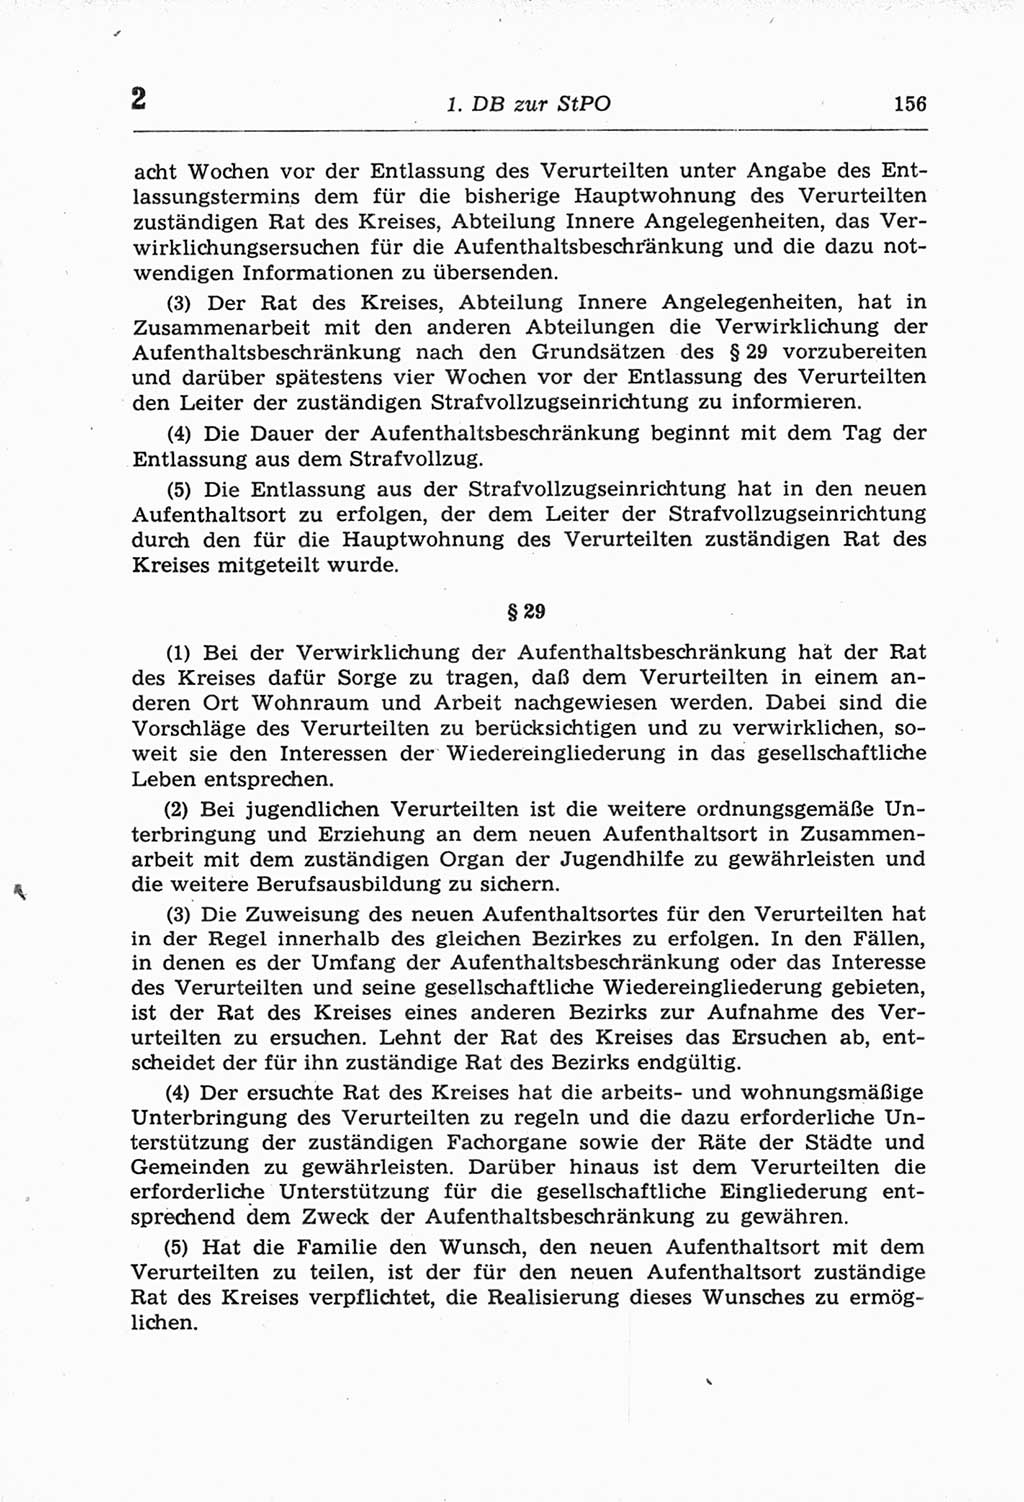 Strafprozeßordnung (StPO) der Deutschen Demokratischen Republik (DDR) und angrenzende Gesetze und Bestimmungen 1968, Seite 156 (StPO Ges. Bstgn. DDR 1968, S. 156)